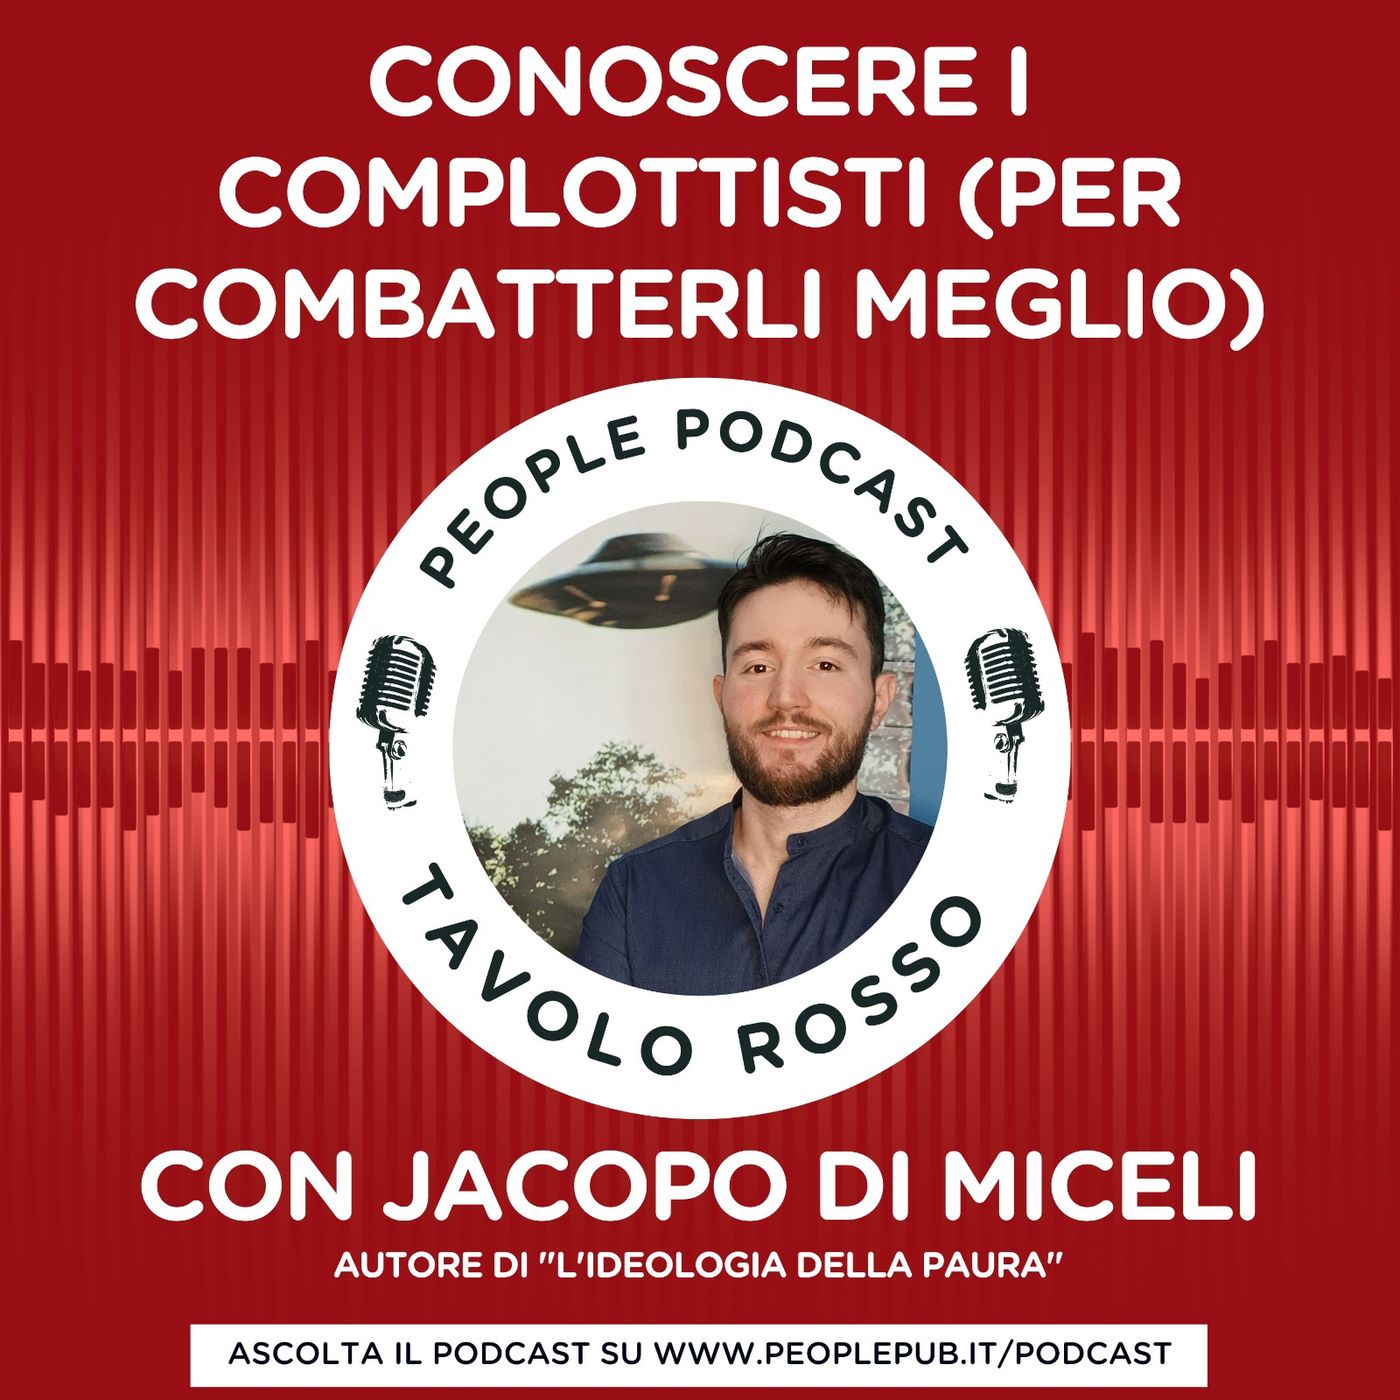 Conoscere i complottisti (per combatterli meglio) - con Jacopo Di Miceli e Giuseppe Civati